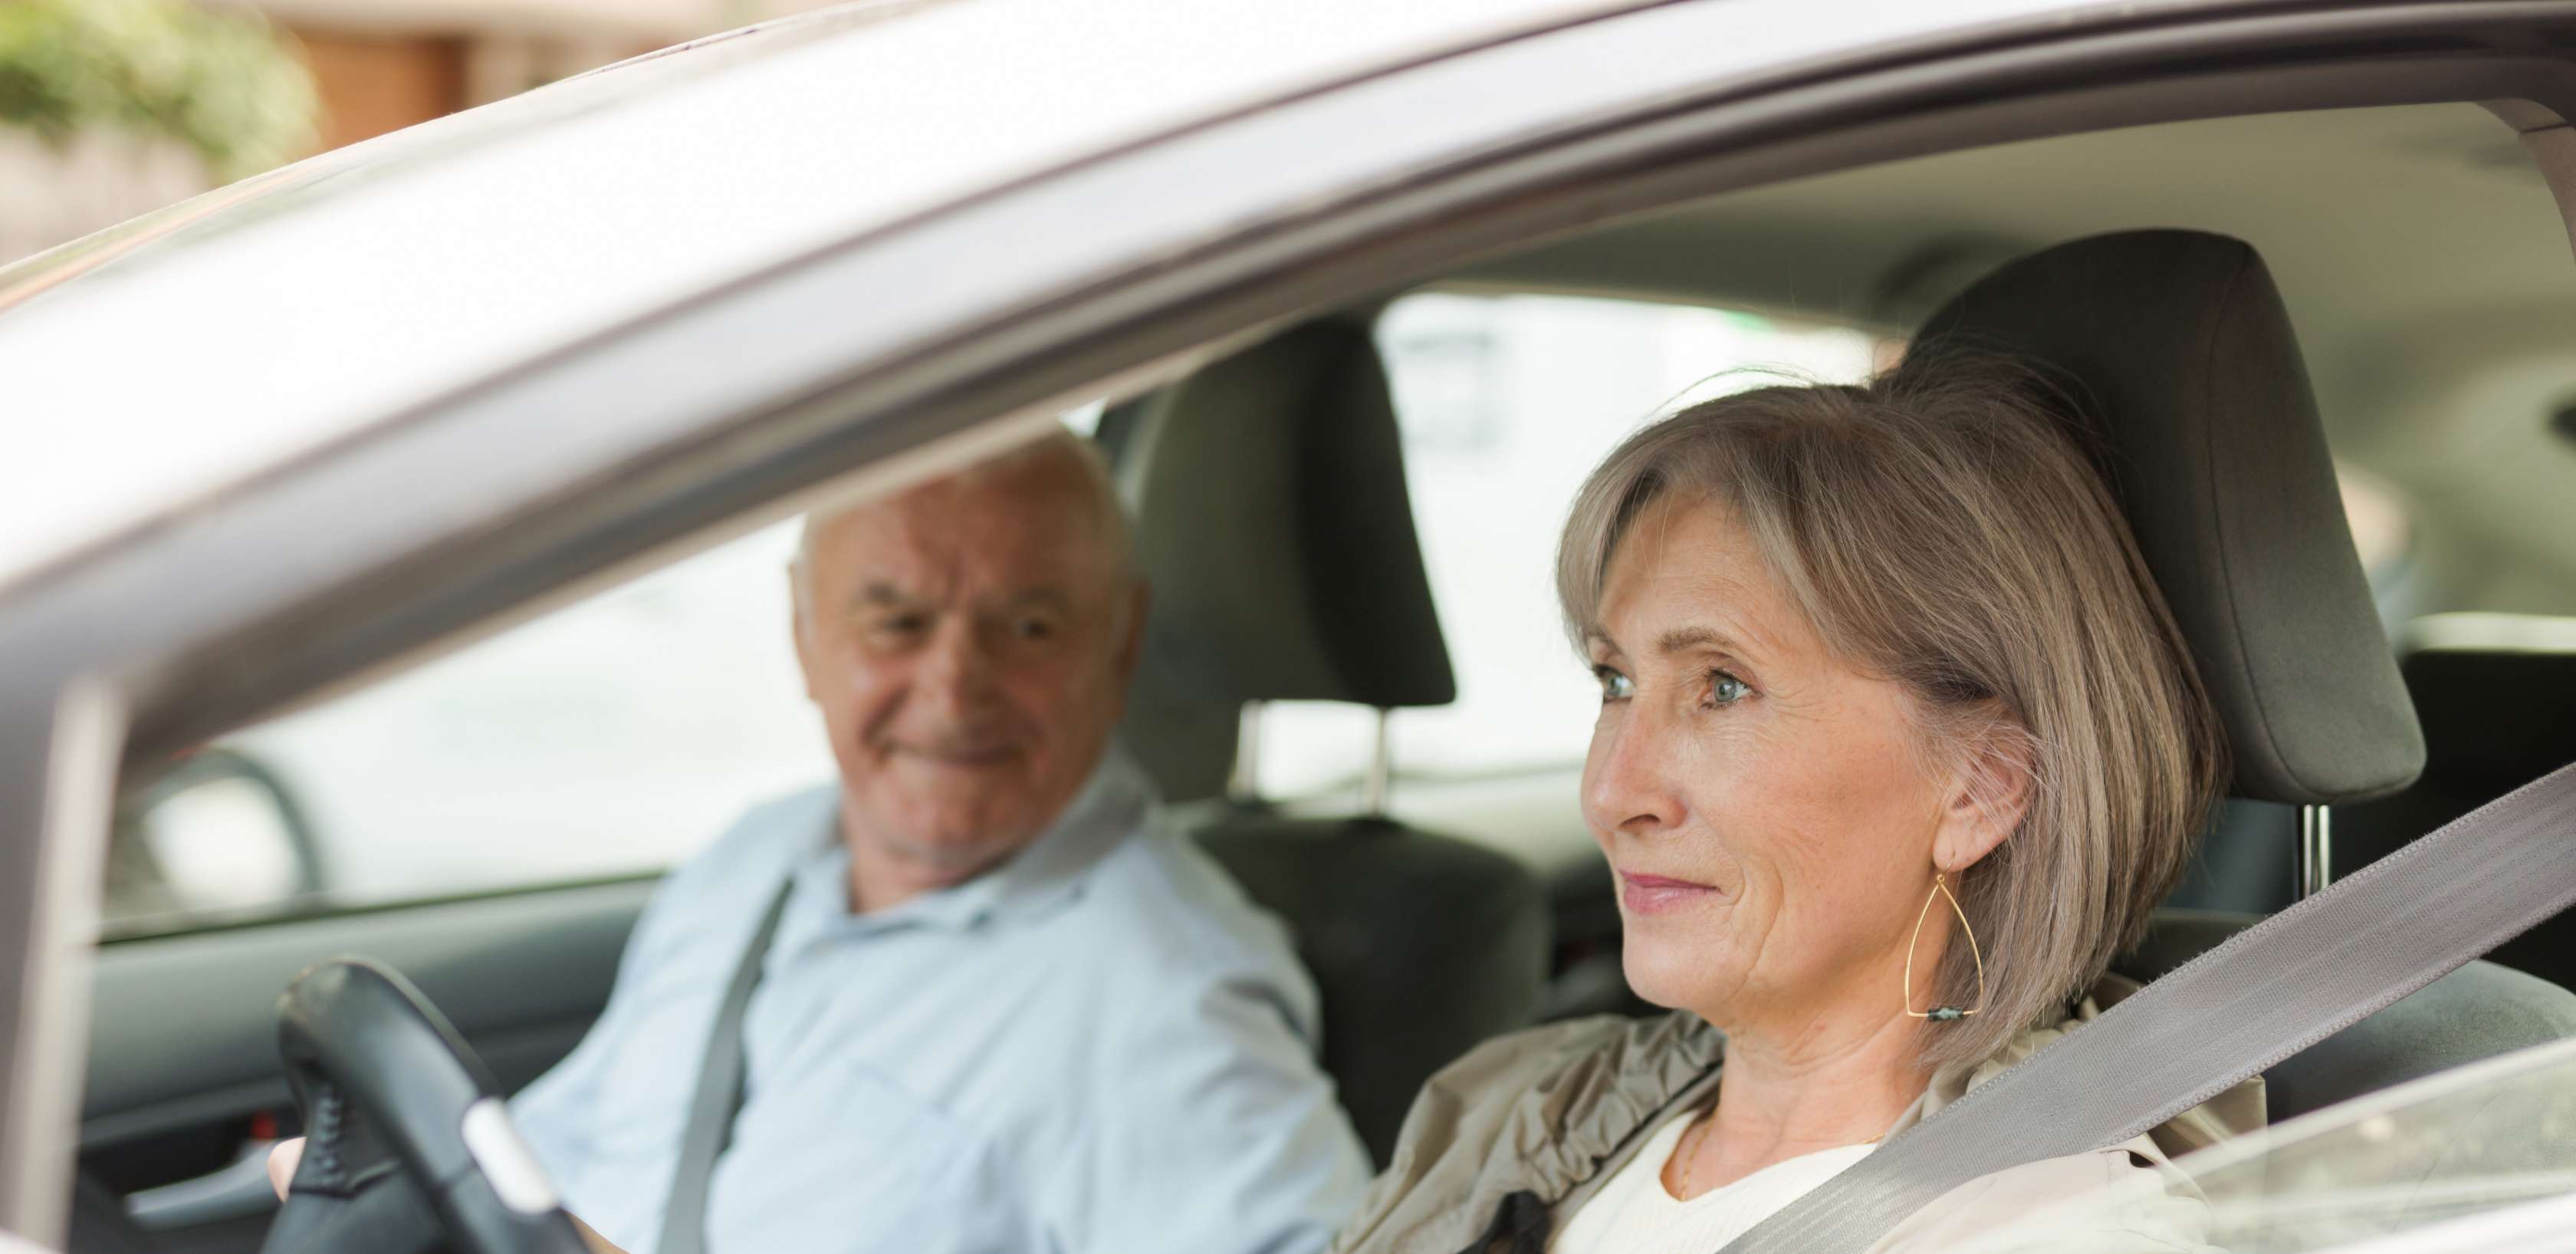 E-Autos für Senioren: Frau mit grauen Haaren steuert Pkw mit älterem Mann auf Beifahrersitz